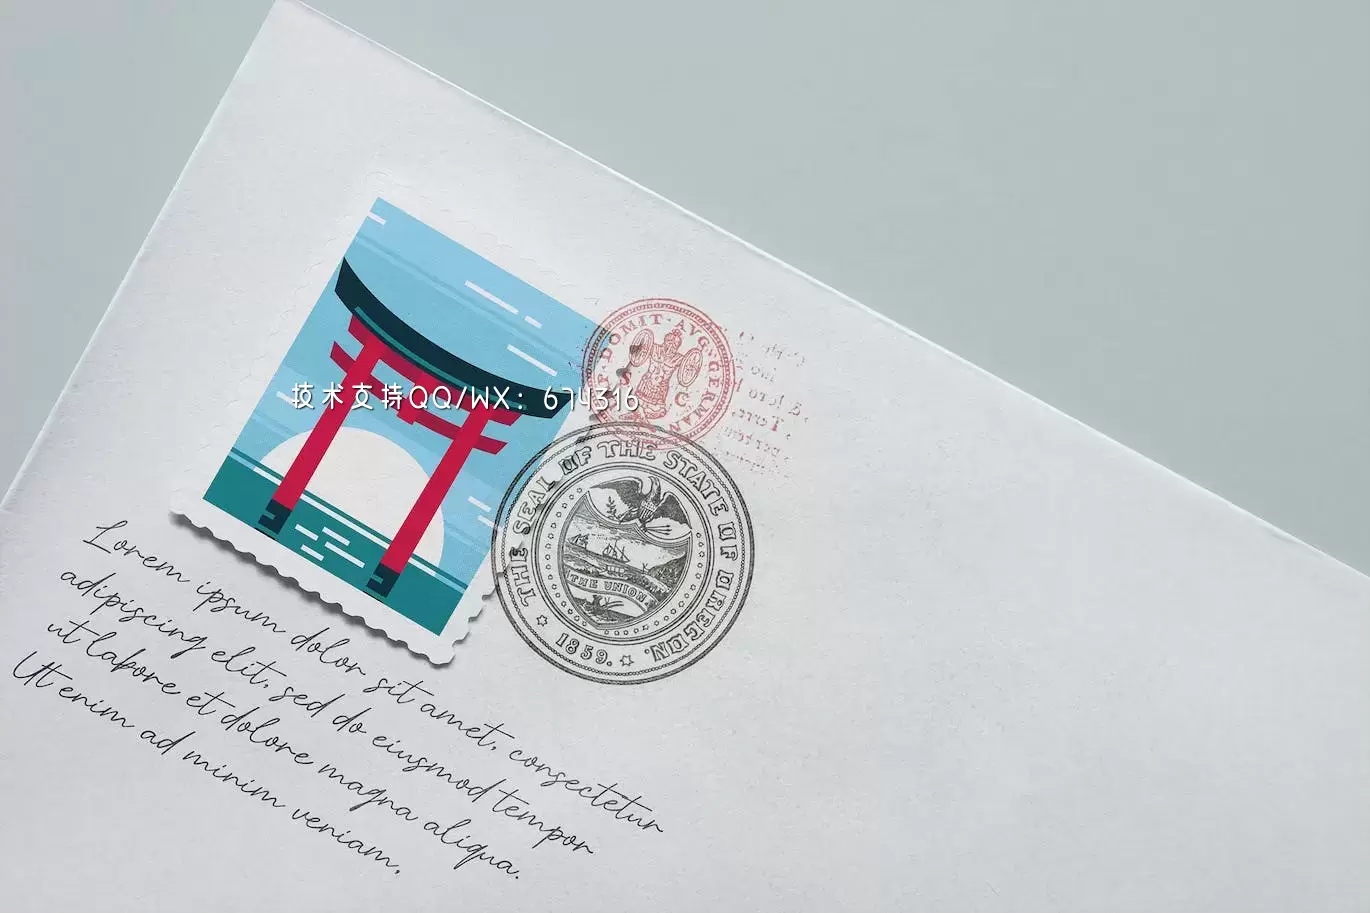 明信片邮票图案设计样机 (PSD)免费下载